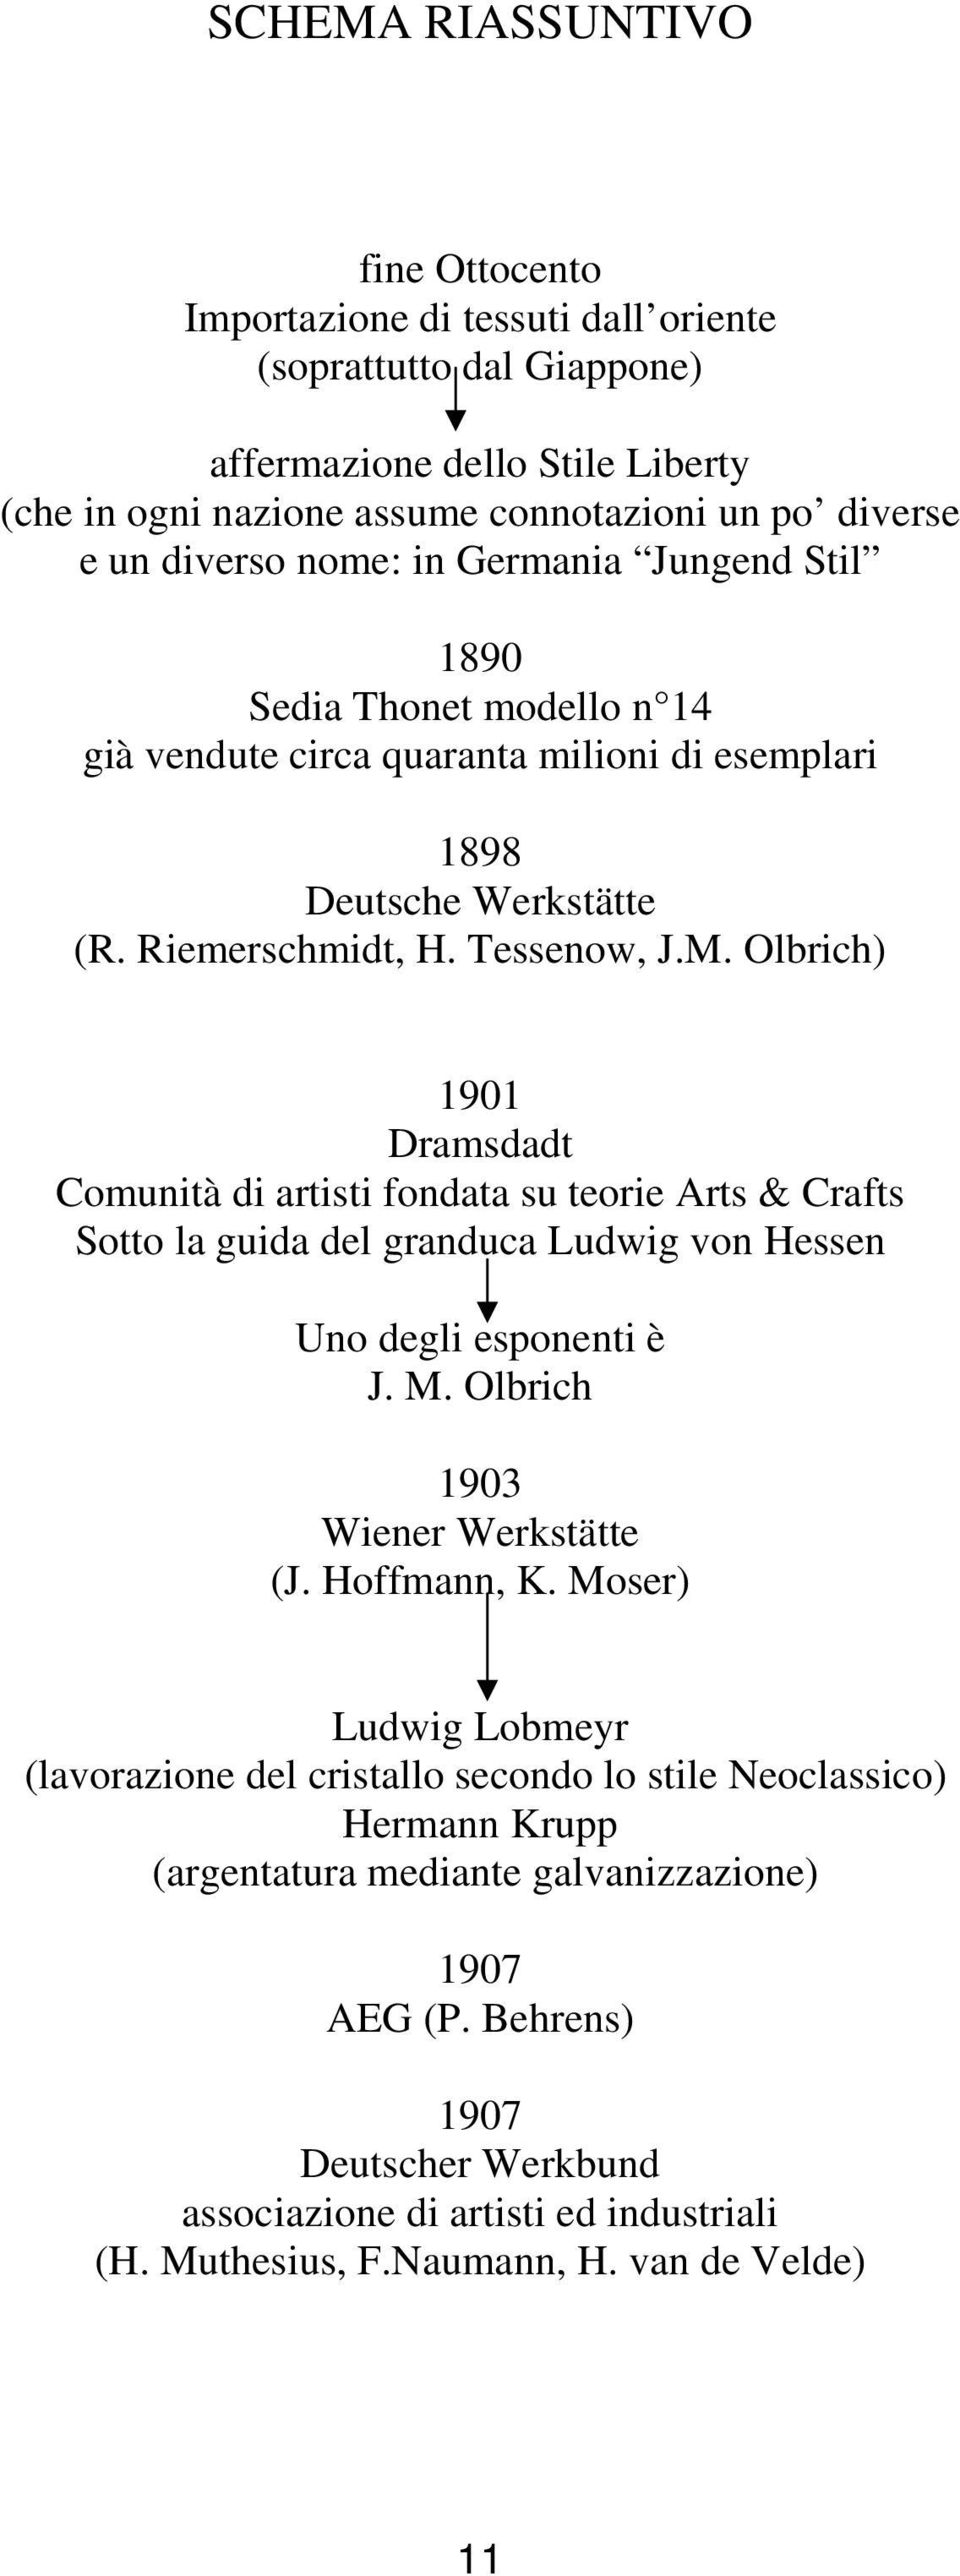 Olbrich) 1901 Dramsdadt Comunità di artisti fondata su teorie Arts & Crafts Sotto la guida del granduca Ludwig von Hessen Uno degli esponenti è J. M. Olbrich 1903 Wiener Werkstätte (J. Hoffmann, K.